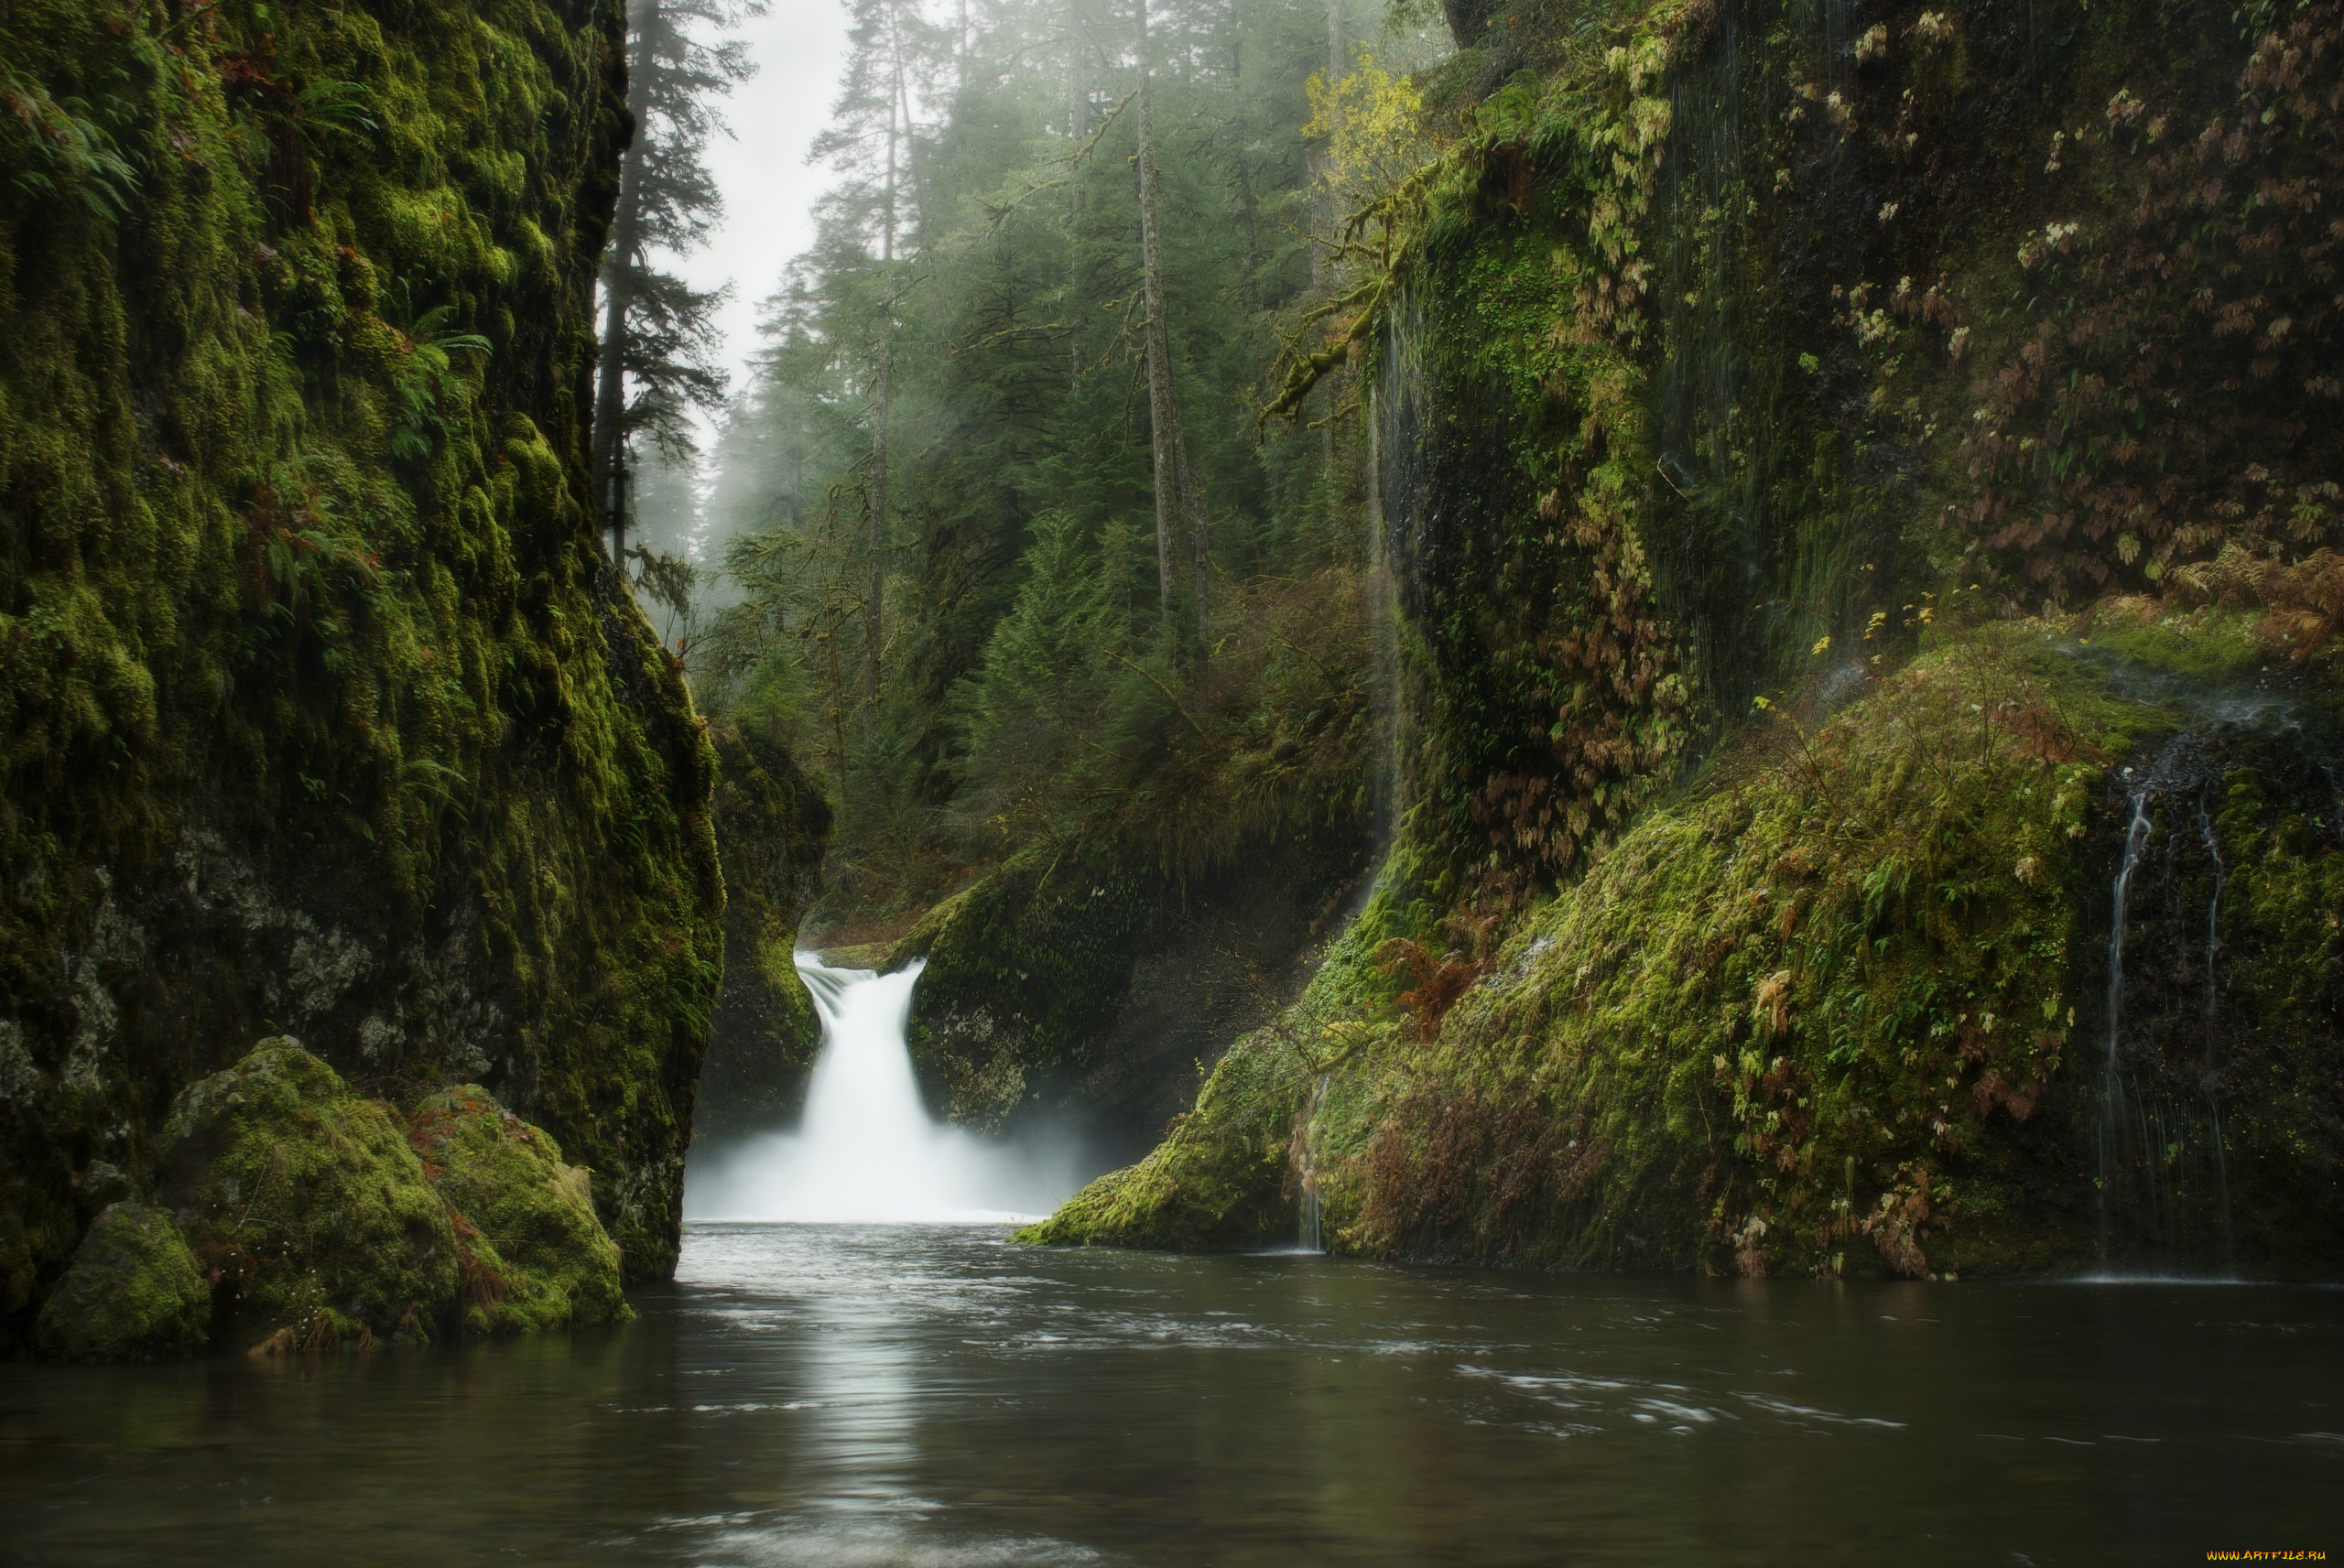 Обои на телефон живой водопад. Природа. Природа в картинках. Красивые водопады. Водопад в лесу.